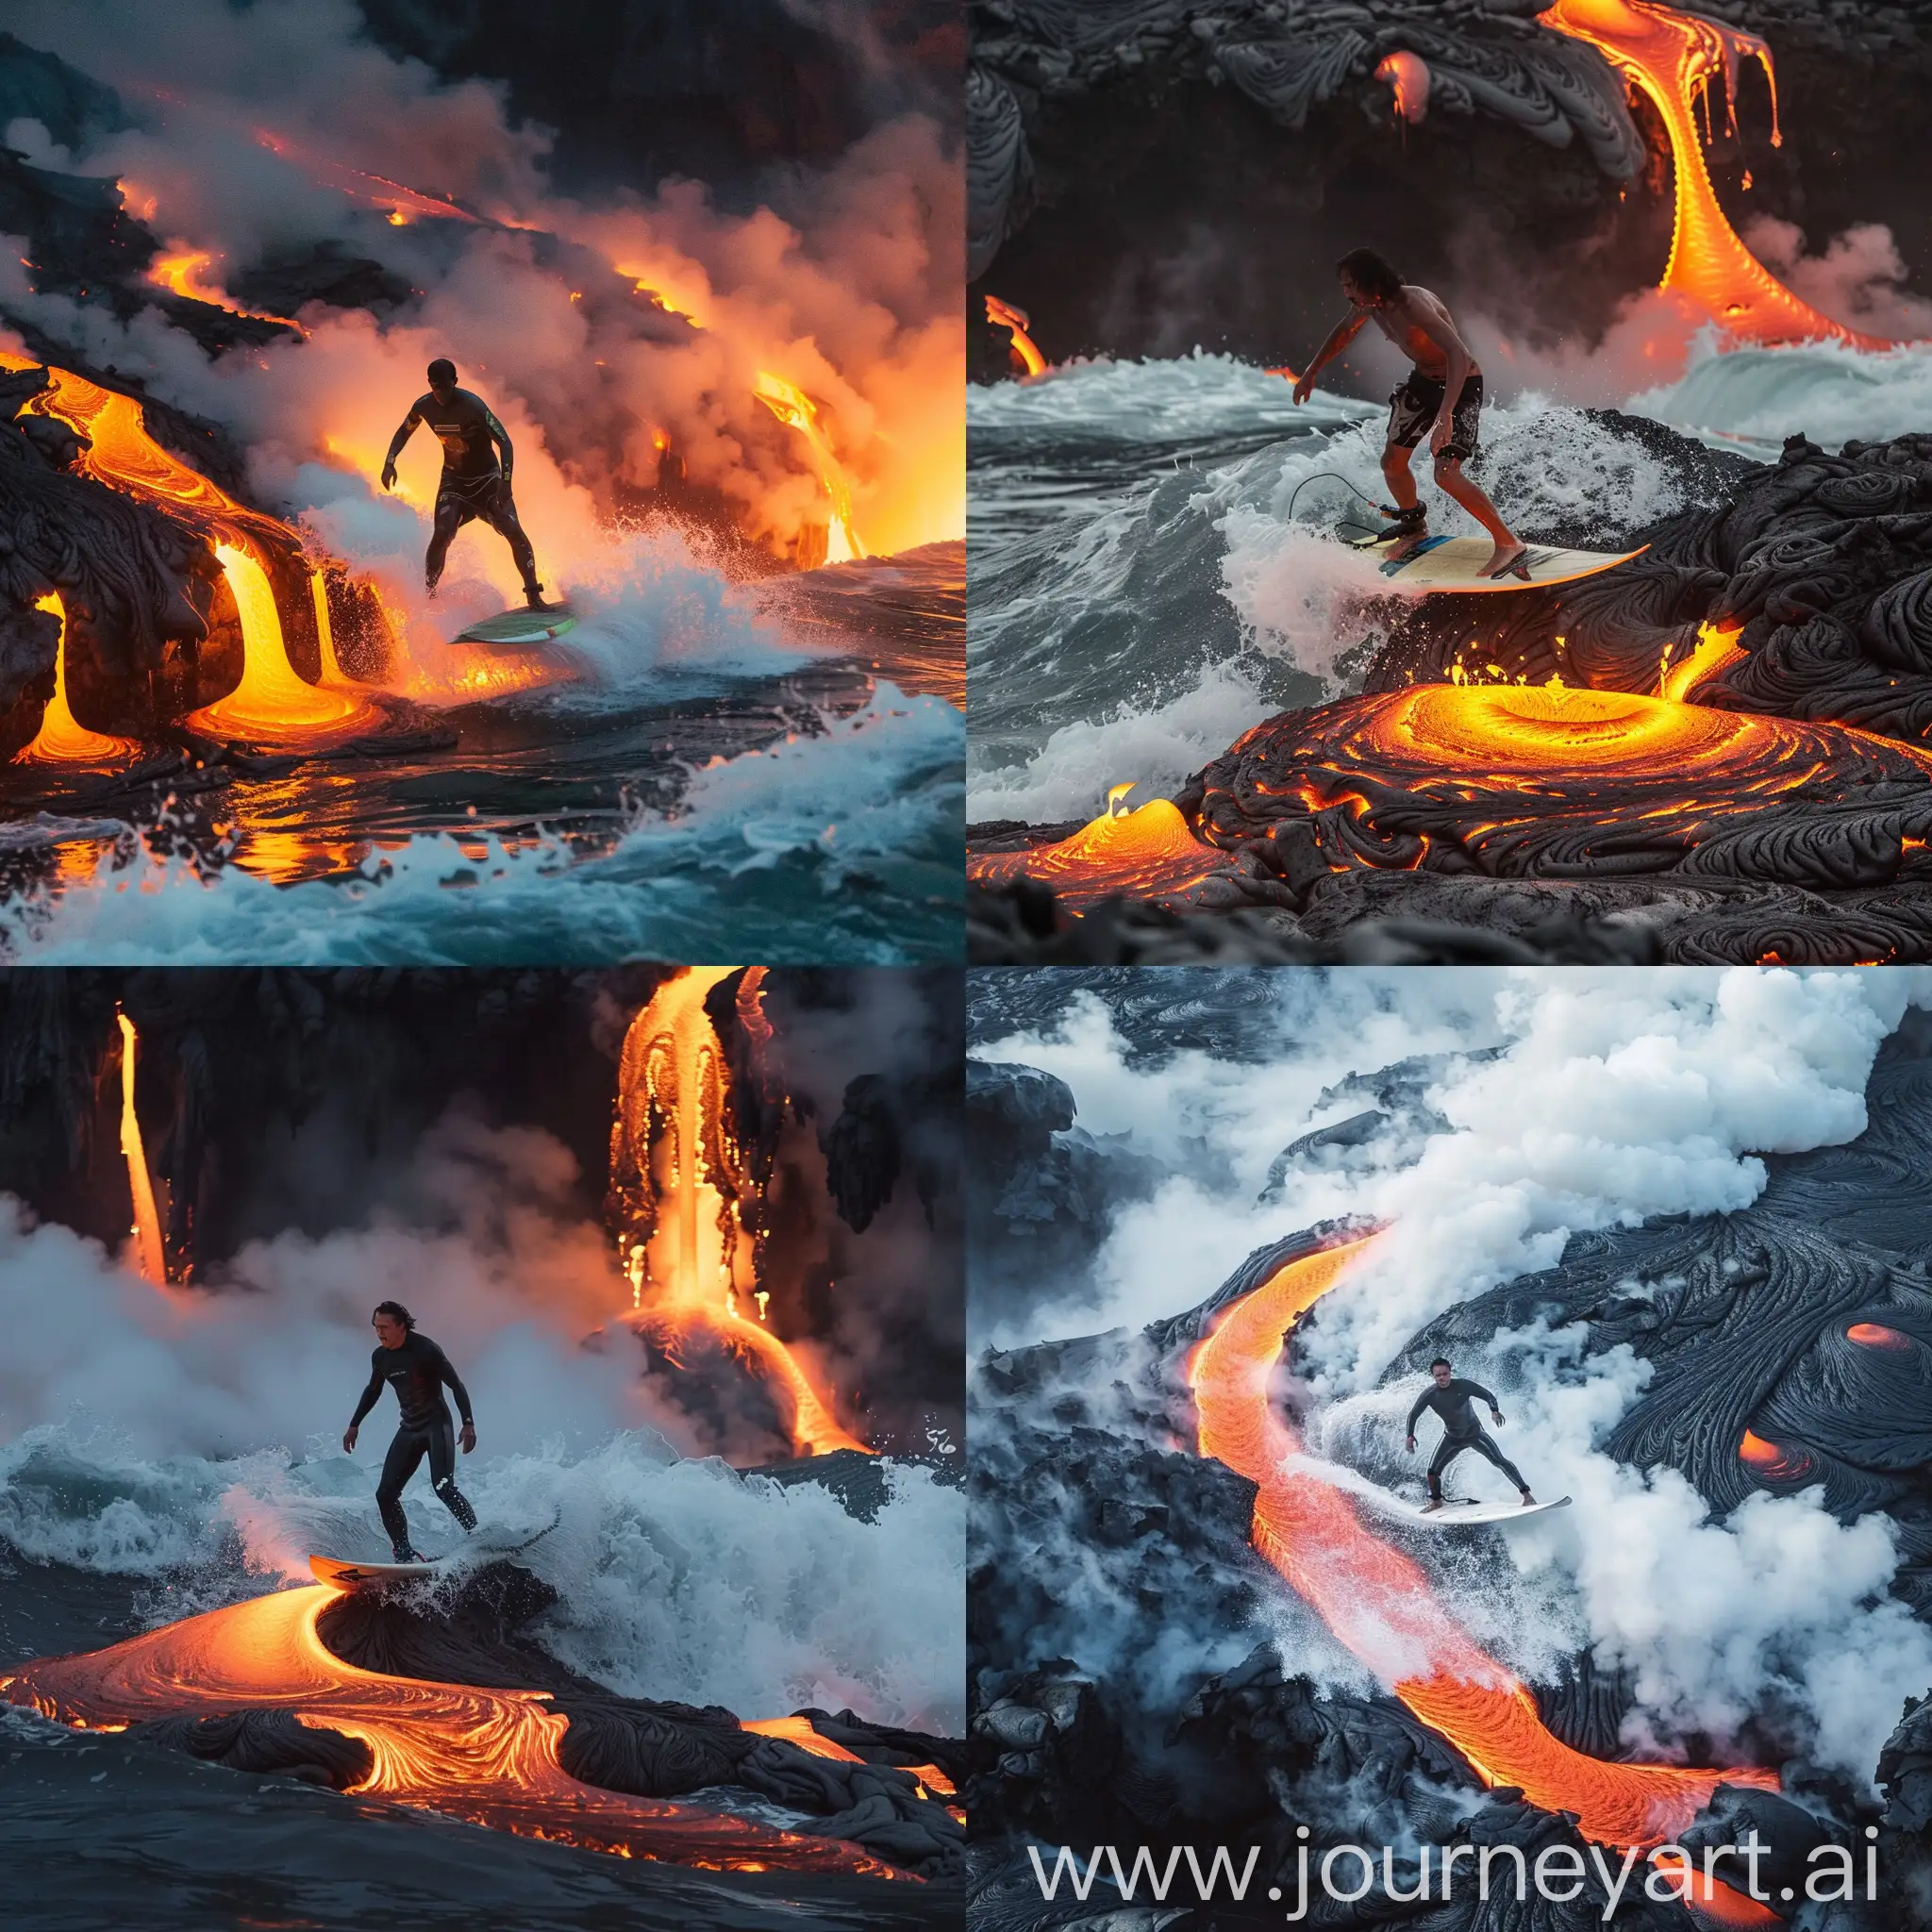 un homme entrain de faire du surf sur la lave en fusion